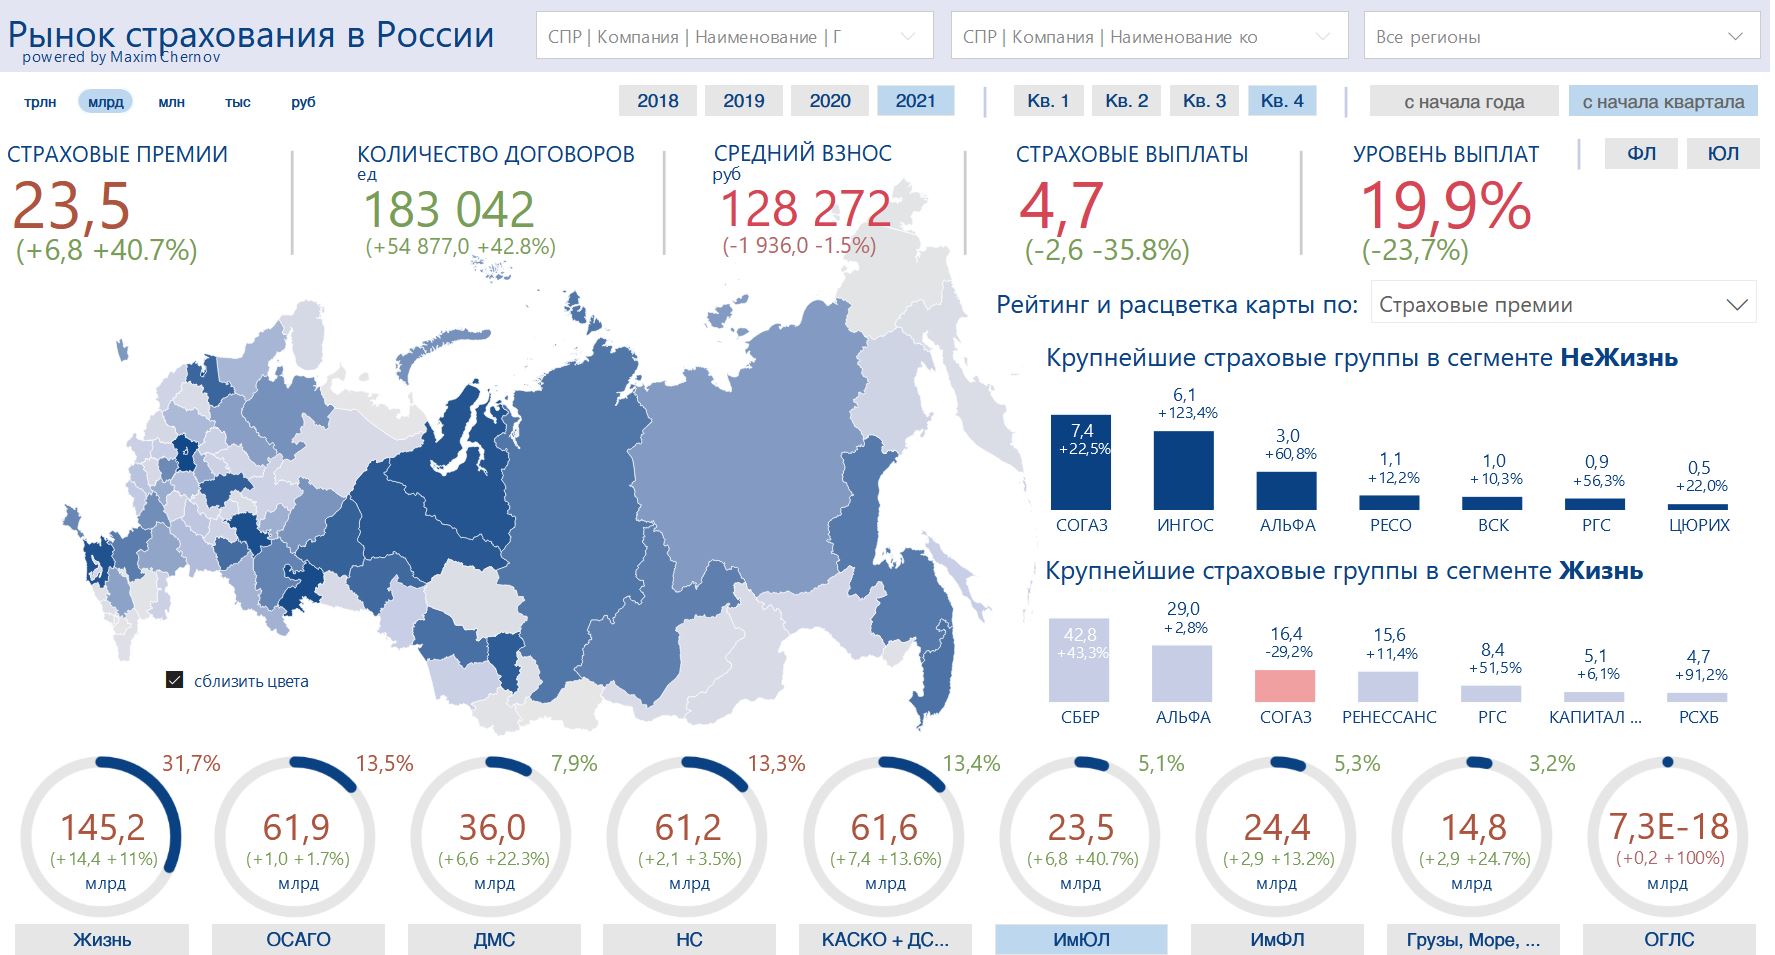 Сборы по страхованию ИмЮЛ превысили 120 млрд рублей в 2021 году